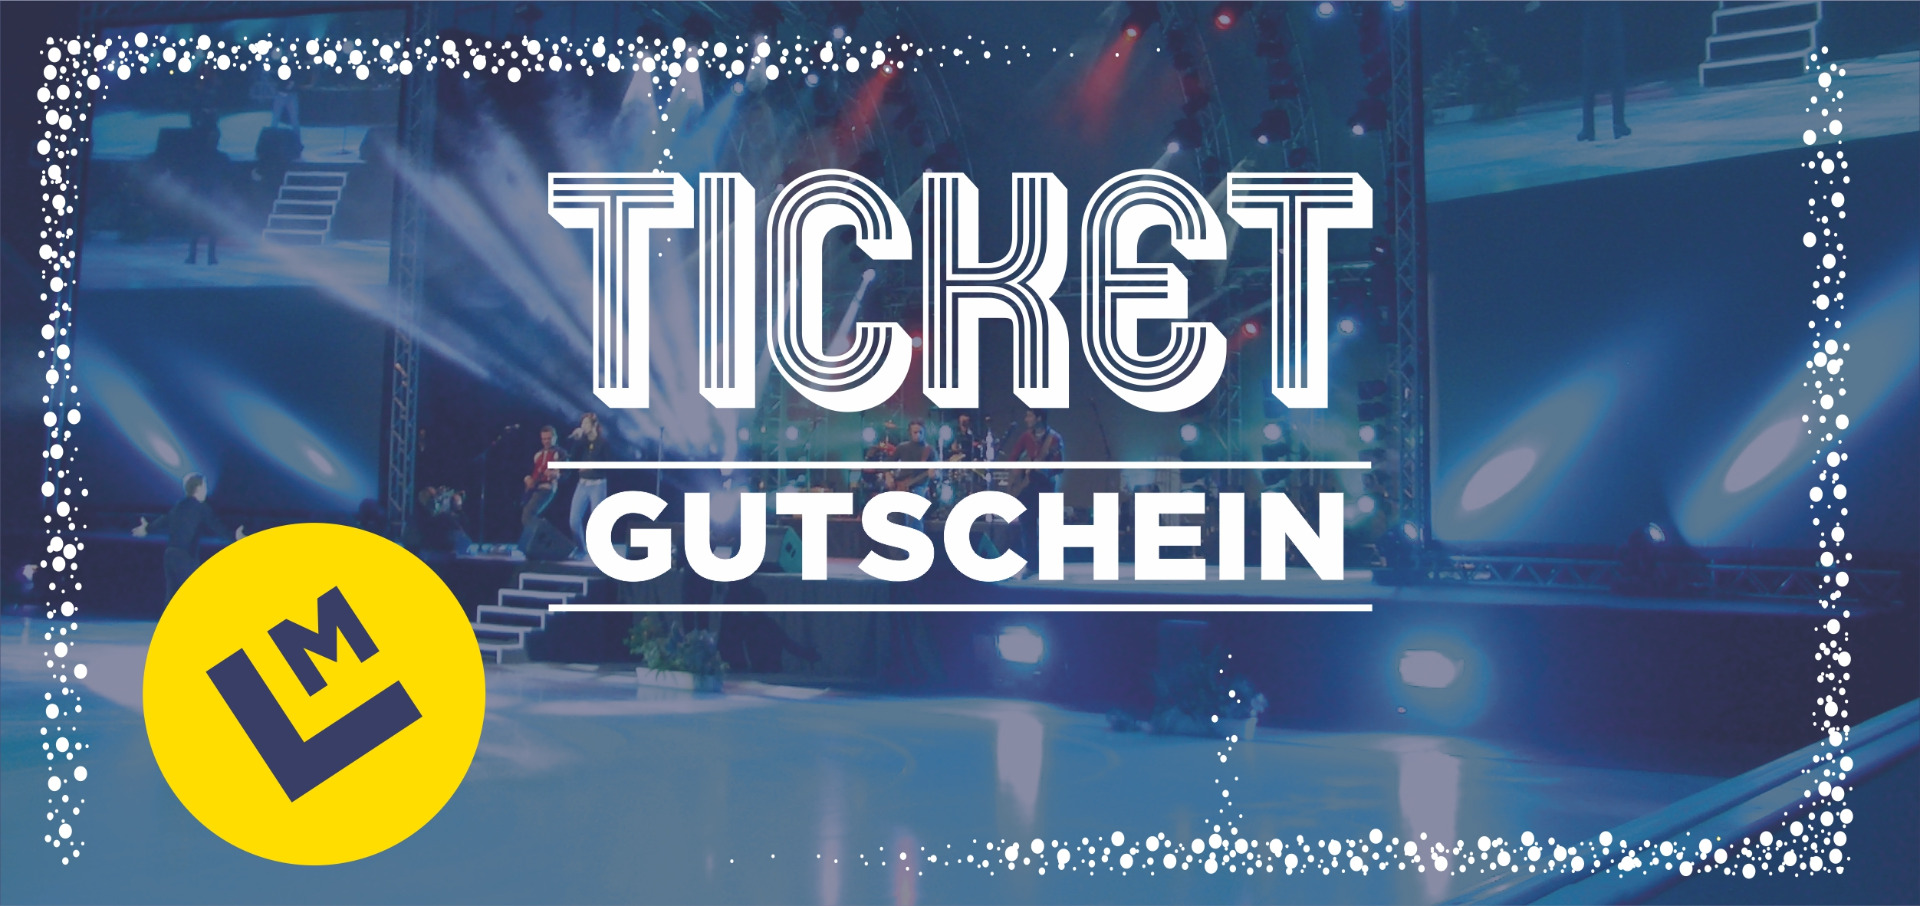 Ticket Gutschein